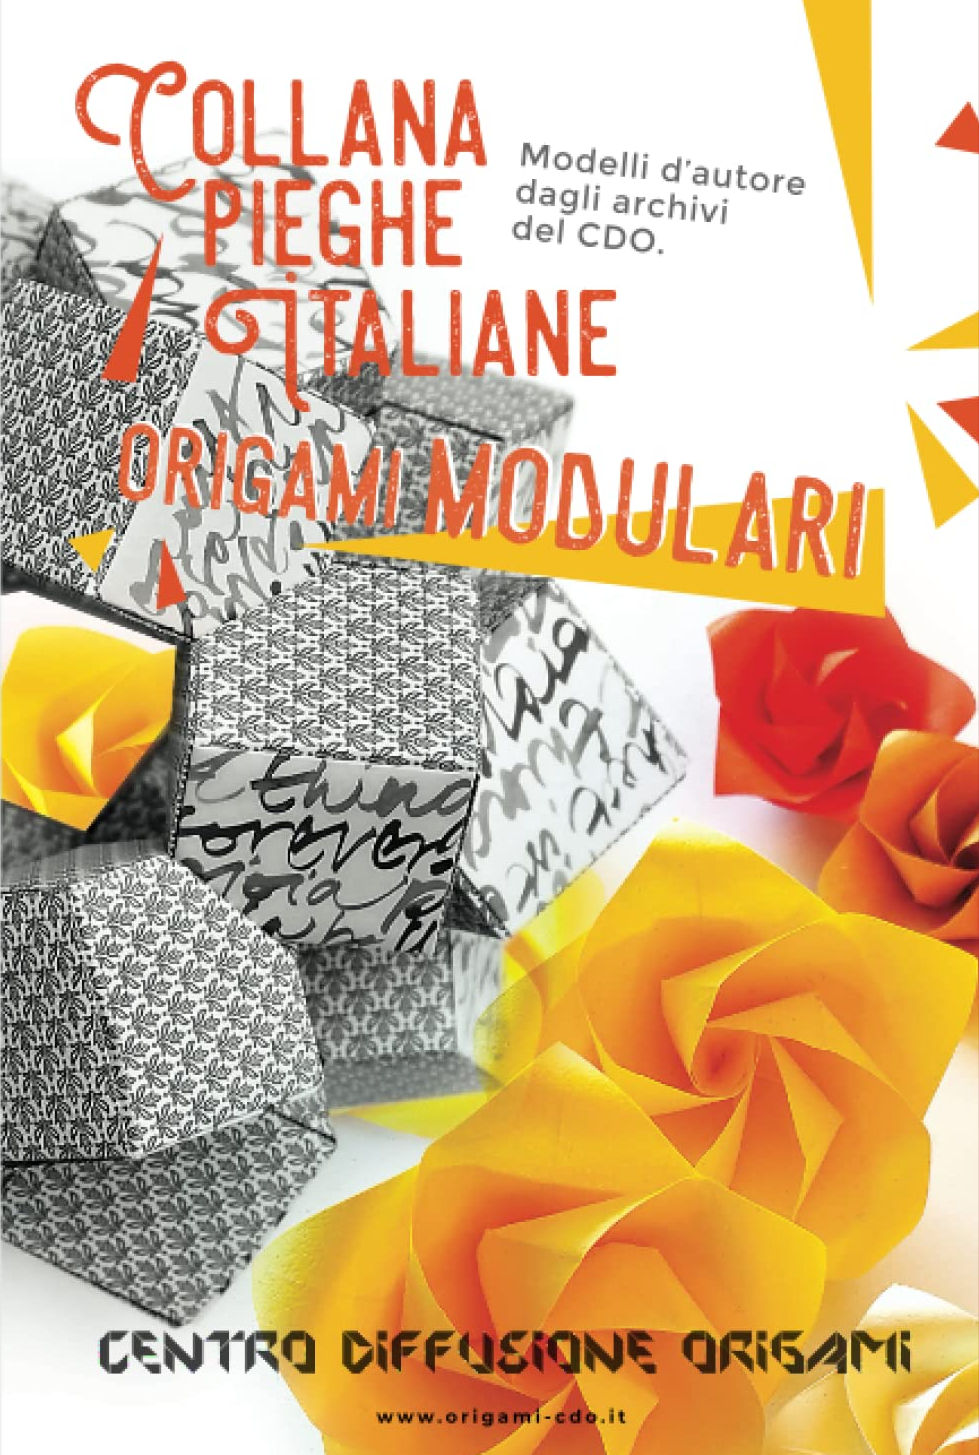 Collana pieghe Italiane - origami MODULARI : page 16.